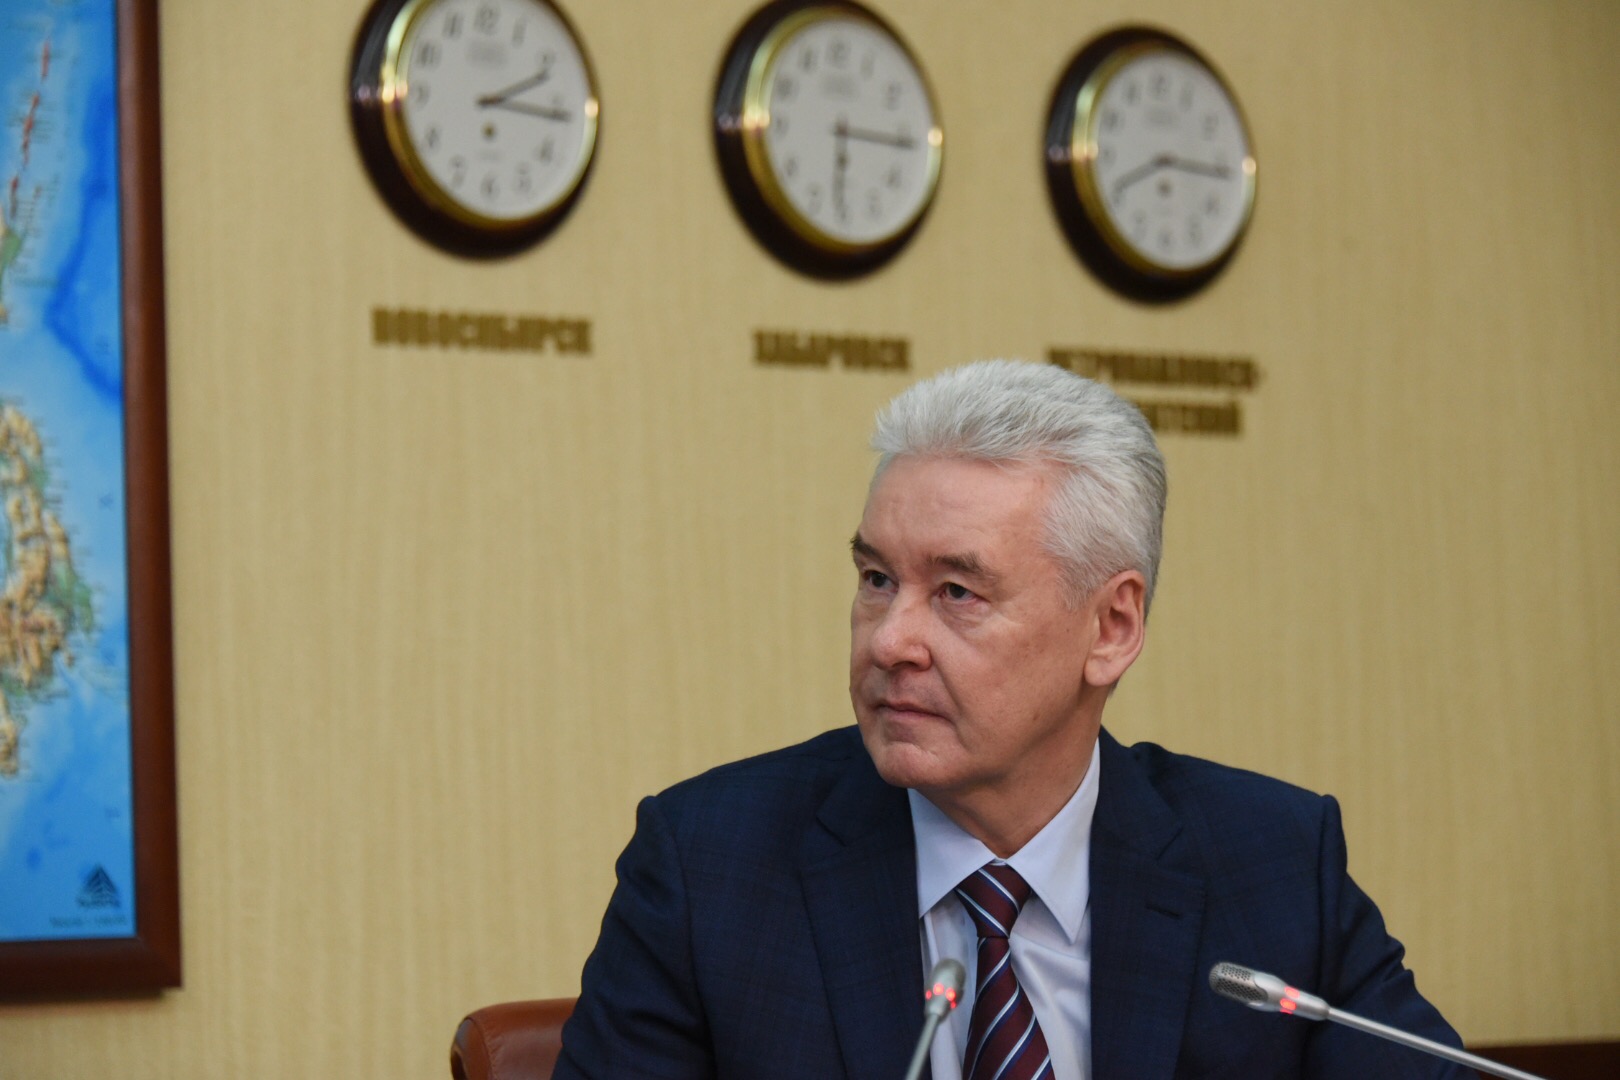 Собянин отметил конструктивное взаимодействие фракций МГД в ходе принятия бюджета Москвы. Фото: архив